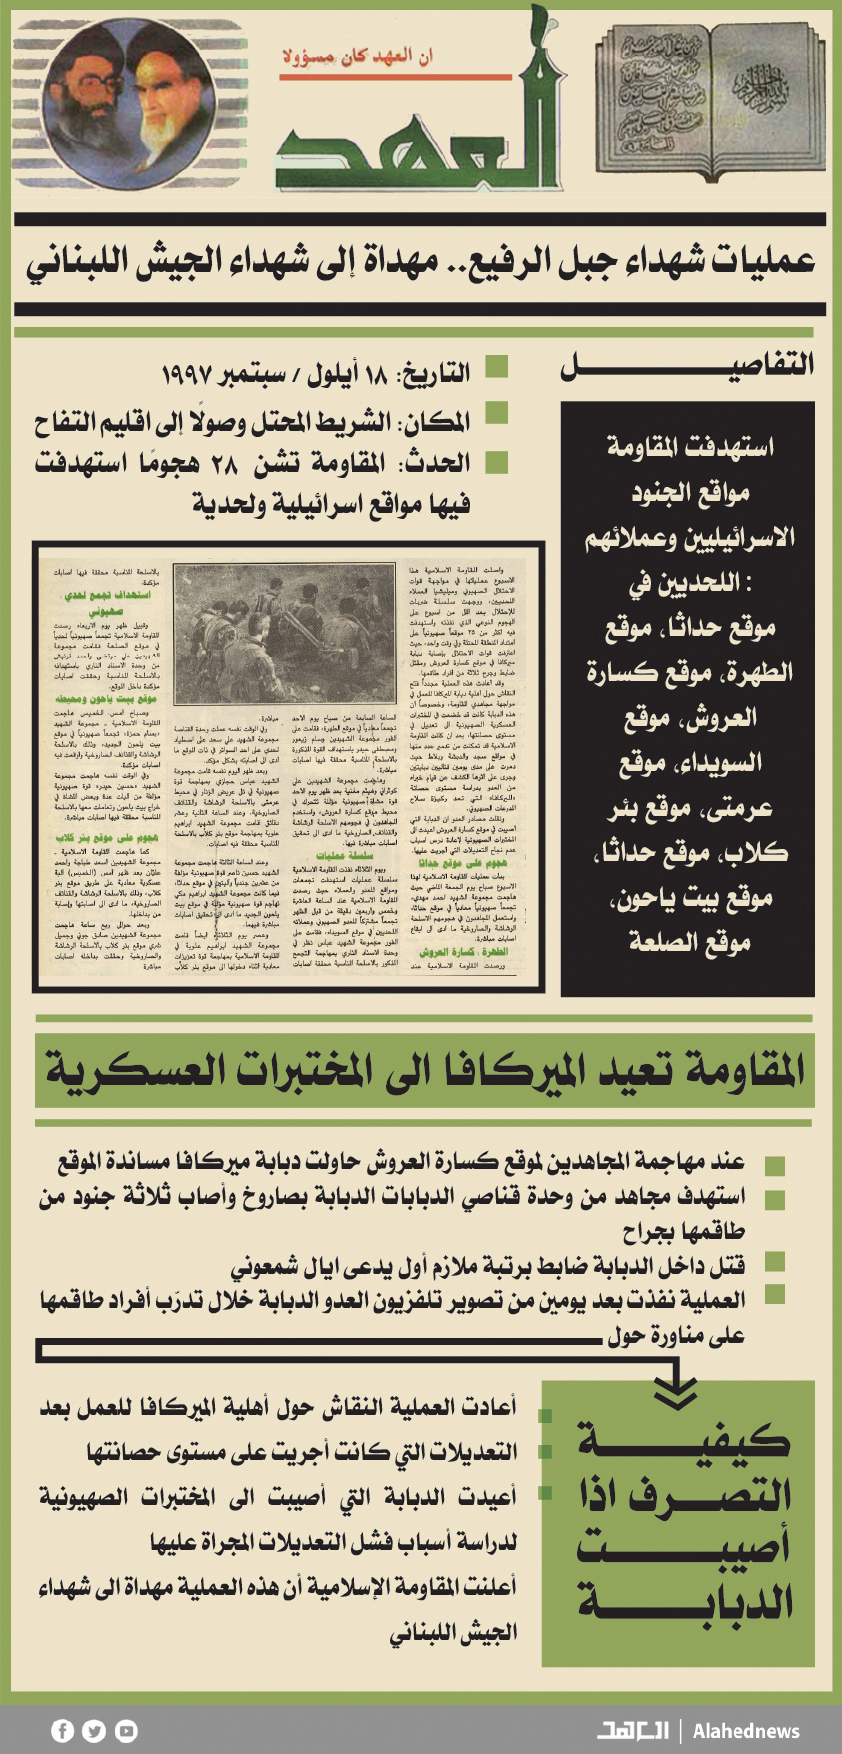 18 أيلول 1997: عمليات شهداء الجبل الرفيع.. مهداة إلى شهداء الجيش اللبناني